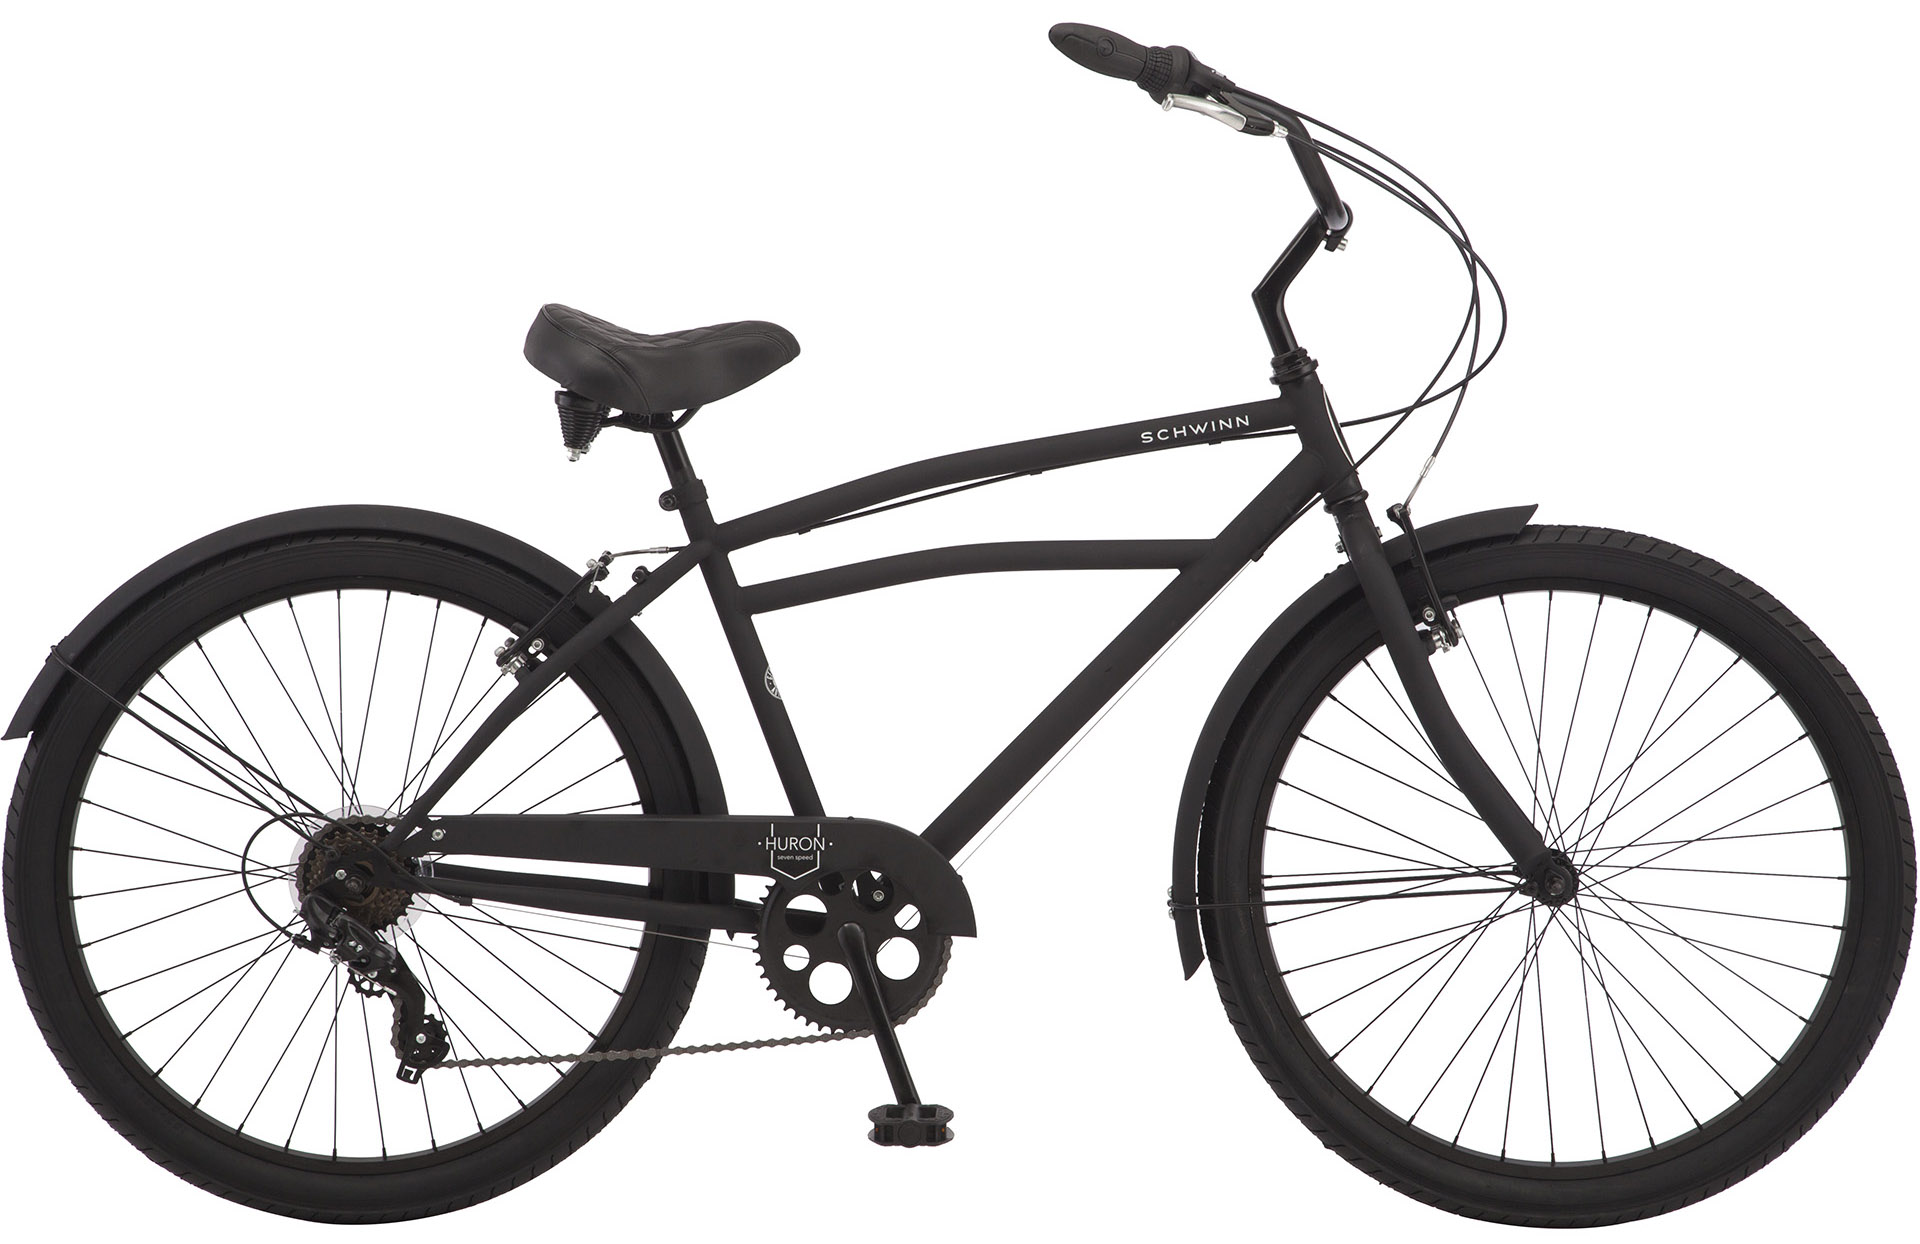  Отзывы о Городском велосипеде Schwinn Huron 7 (2021) 2021